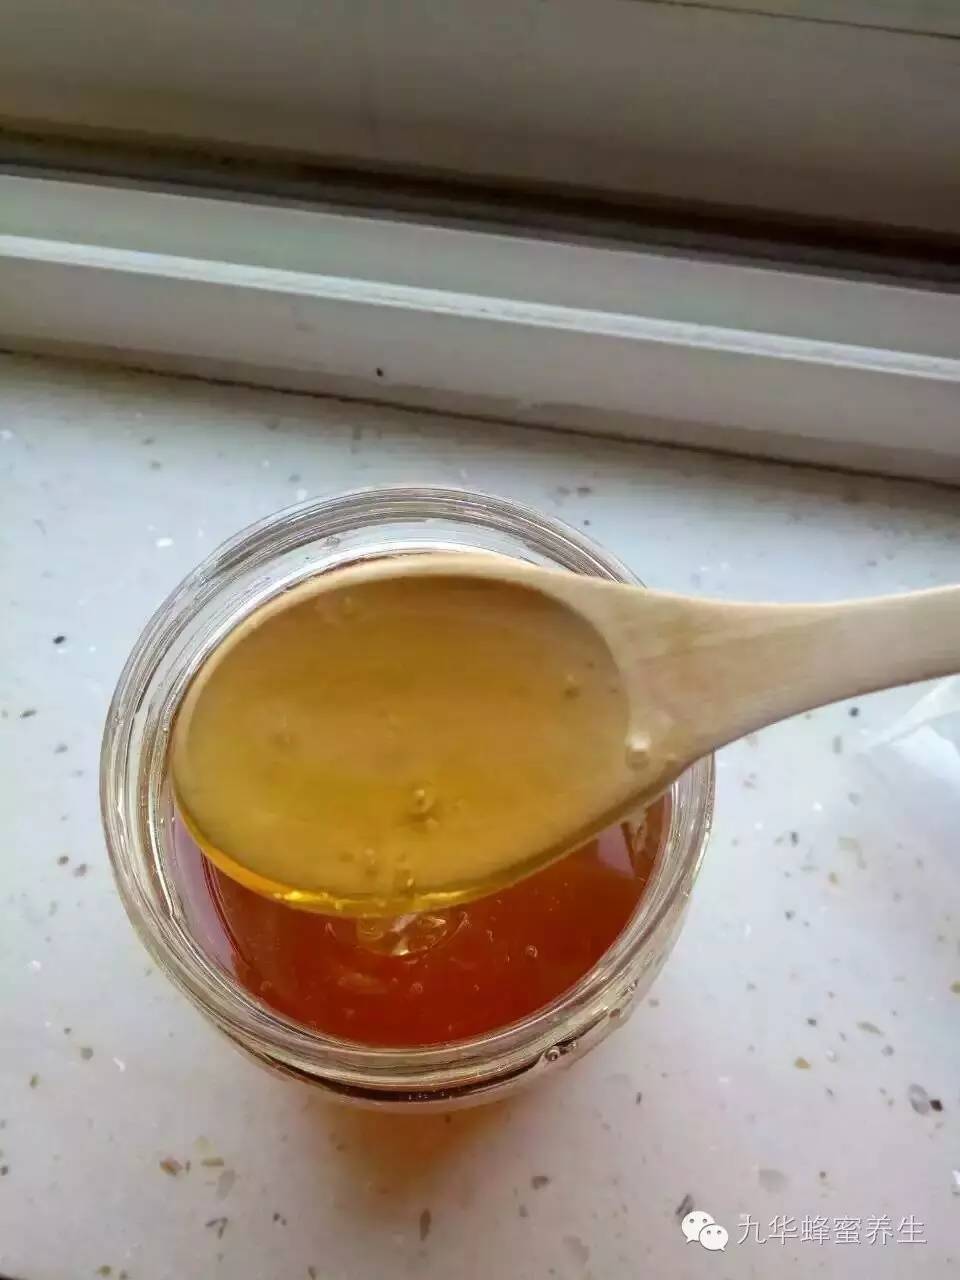 怎么做蜂蜜祛痘面膜 蜂蜜在冬天凝固吗 蜂蜜白菜 阵痛喝蜂蜜水 家家悦蜂蜜